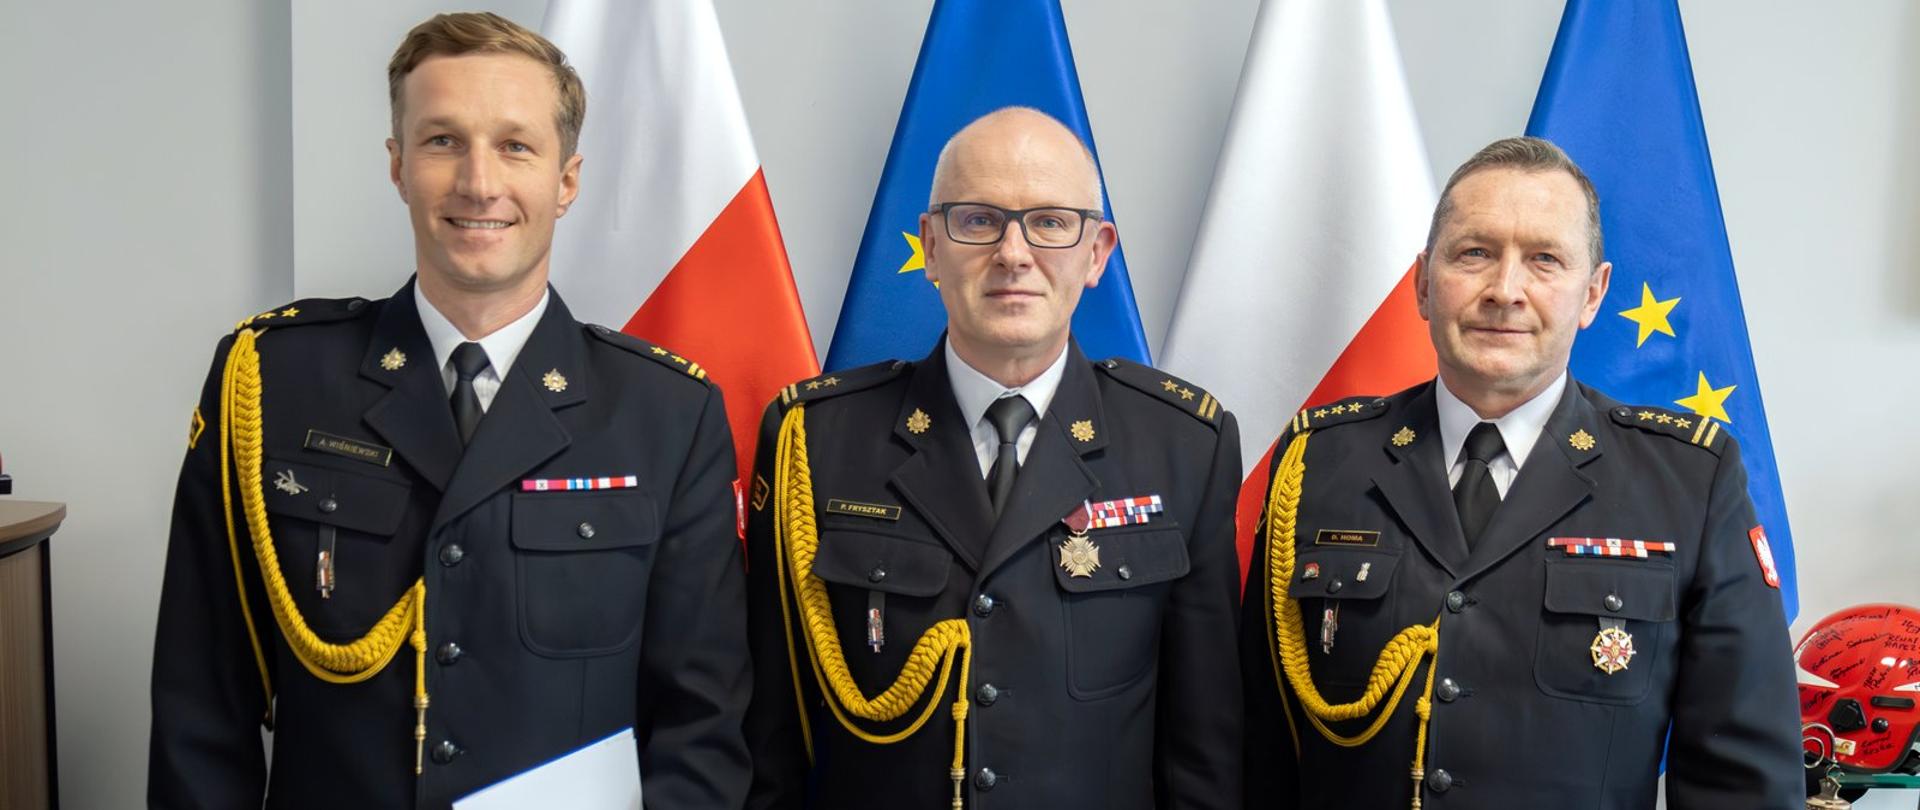 Zdjęcie zrobione wewnątrz pomieszczenia. Na fotografii stoi trzech oficerów Państwowej Straży Pożarnej w mundurach galowych. Za nimi ustawione są flagi RP i UE.